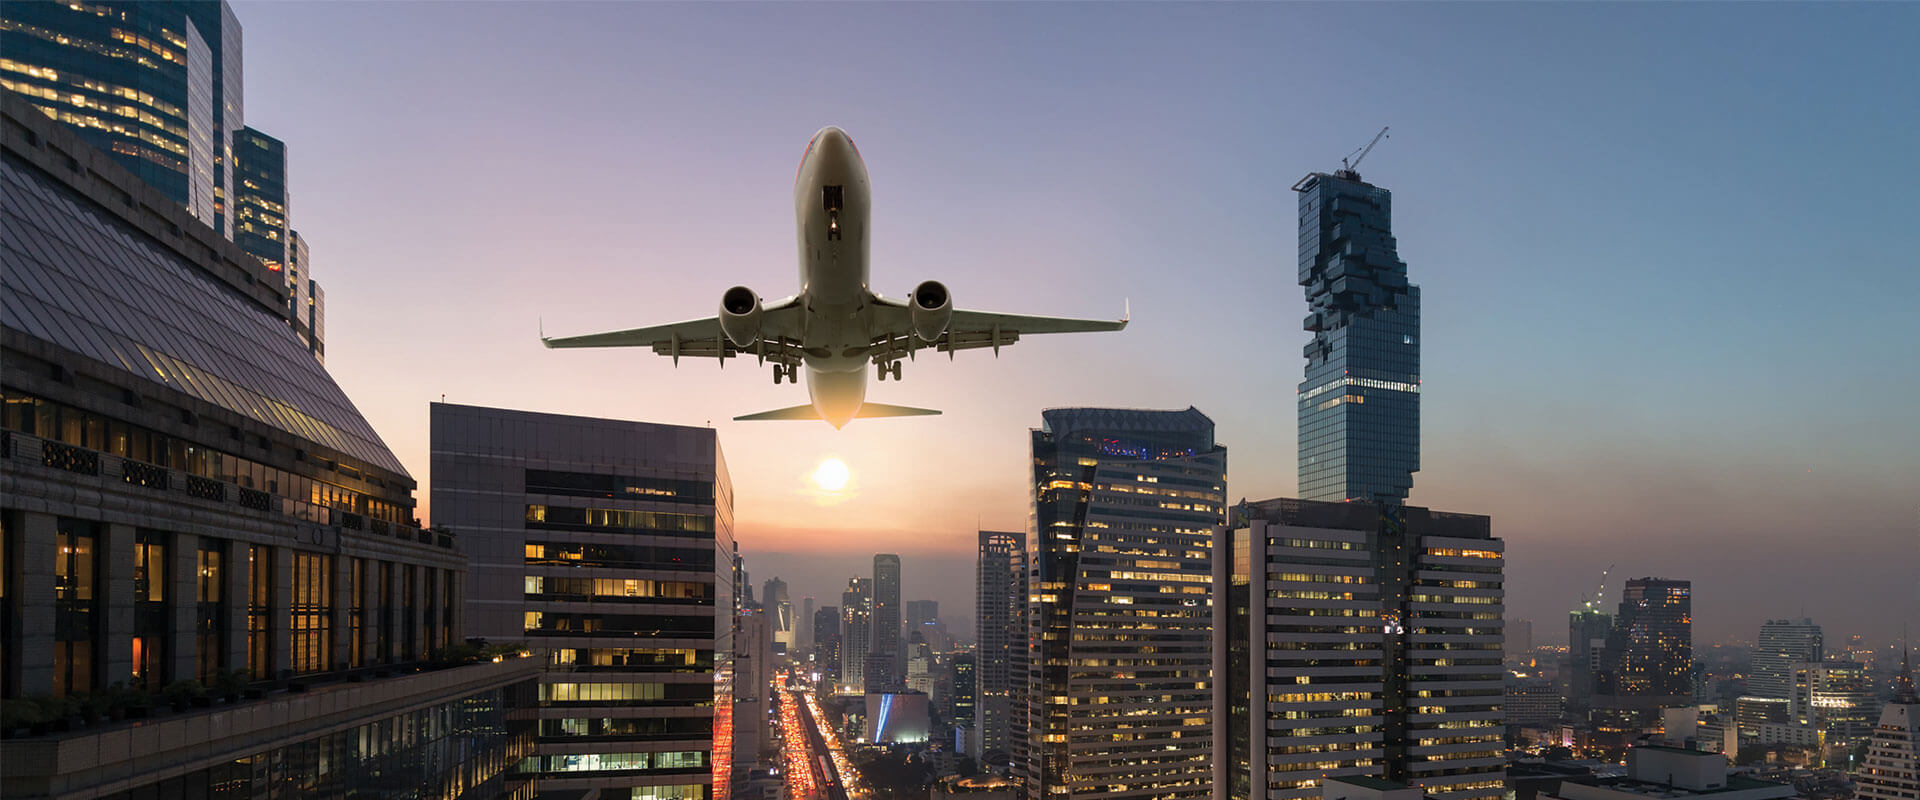 Valeur de l’ingénierie : Accompagner les compagnies aériennes pour un retour au service en toute sécurité